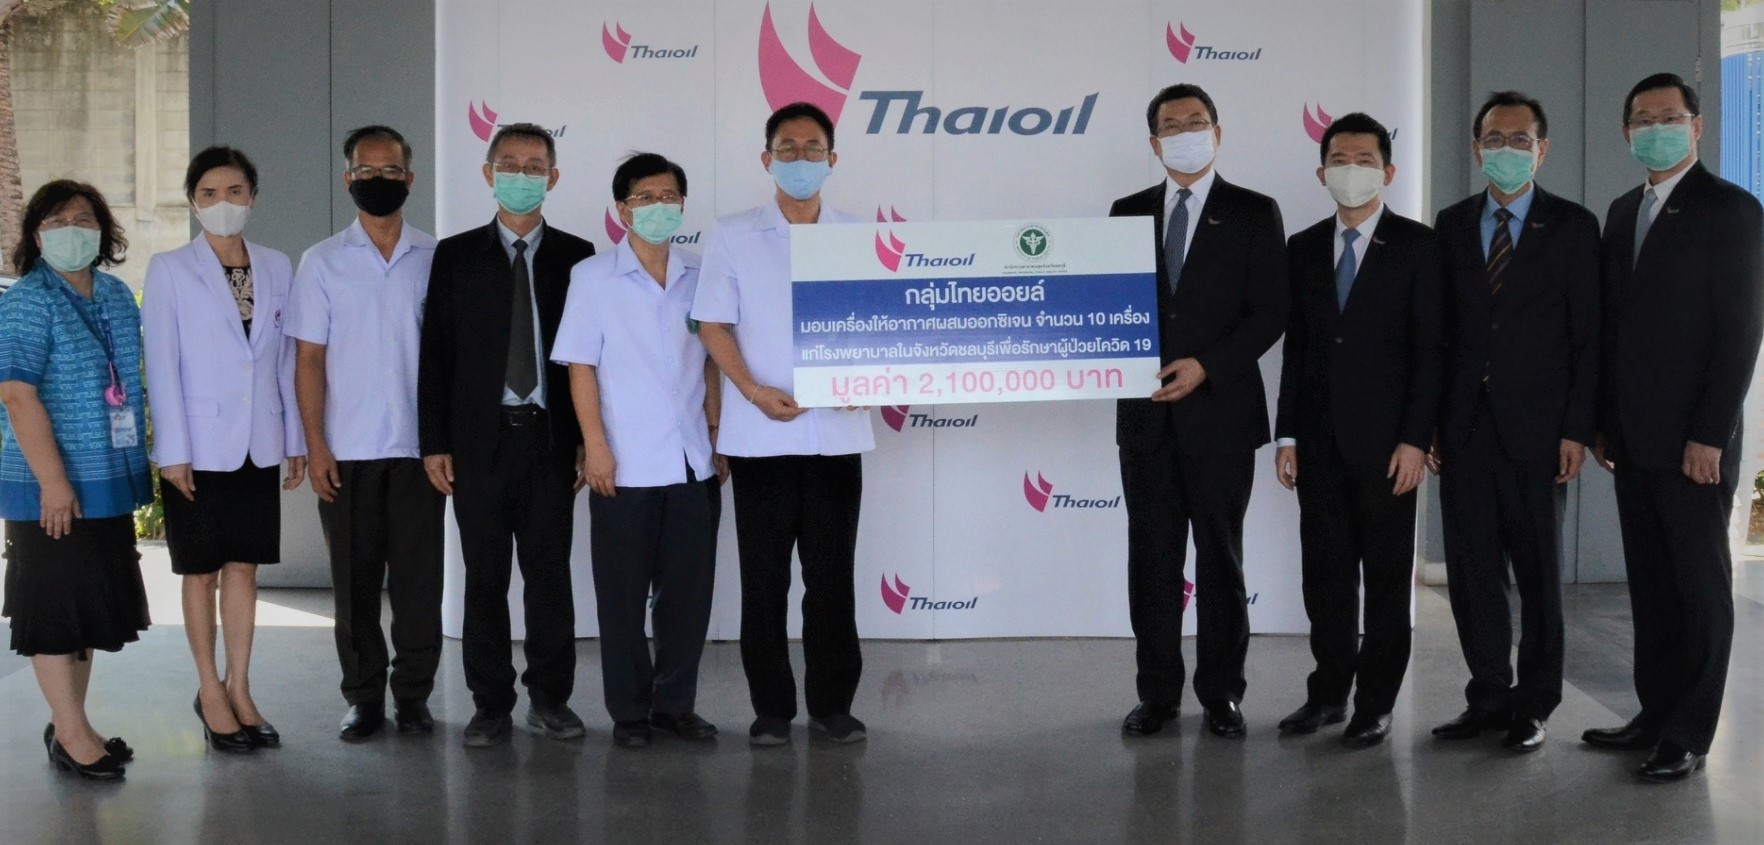 ภาพข่าว: กลุ่มไทยออยล์มอบเครื่องให้อากาศผสมออกซิเจนเพื่อช่วยรักษาผู้ป่วยโรค COVID-19 แก่โรงพยาบาลในจังหวัดชลบุรี